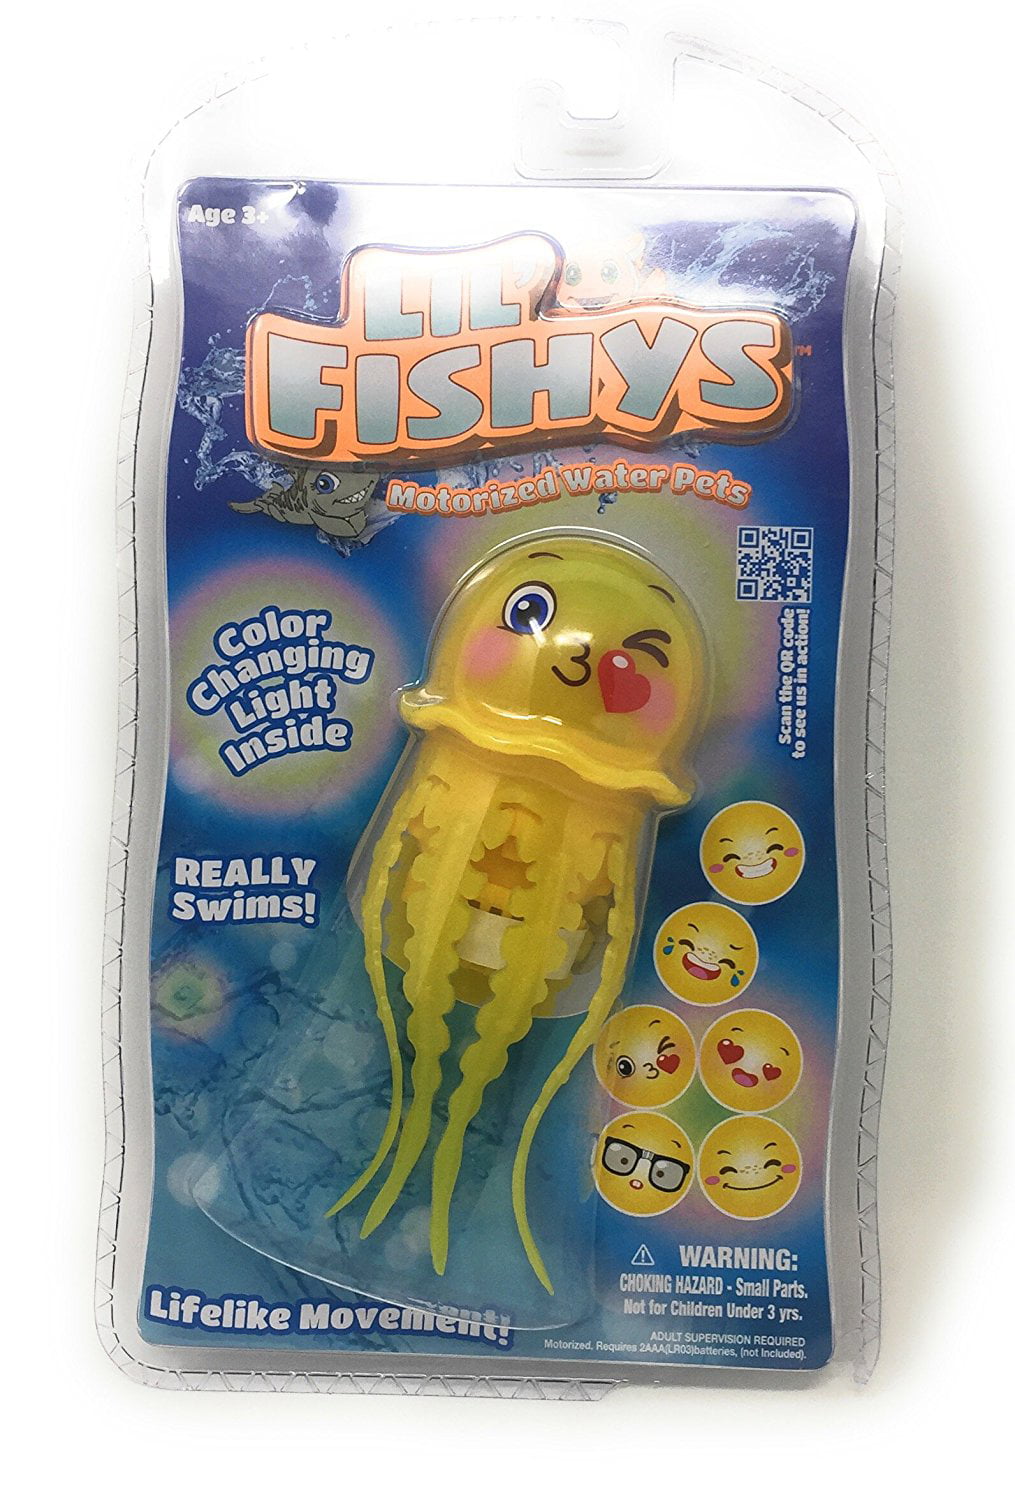 Lil' Fishys Jellys Bubby Motorized Water Pet 